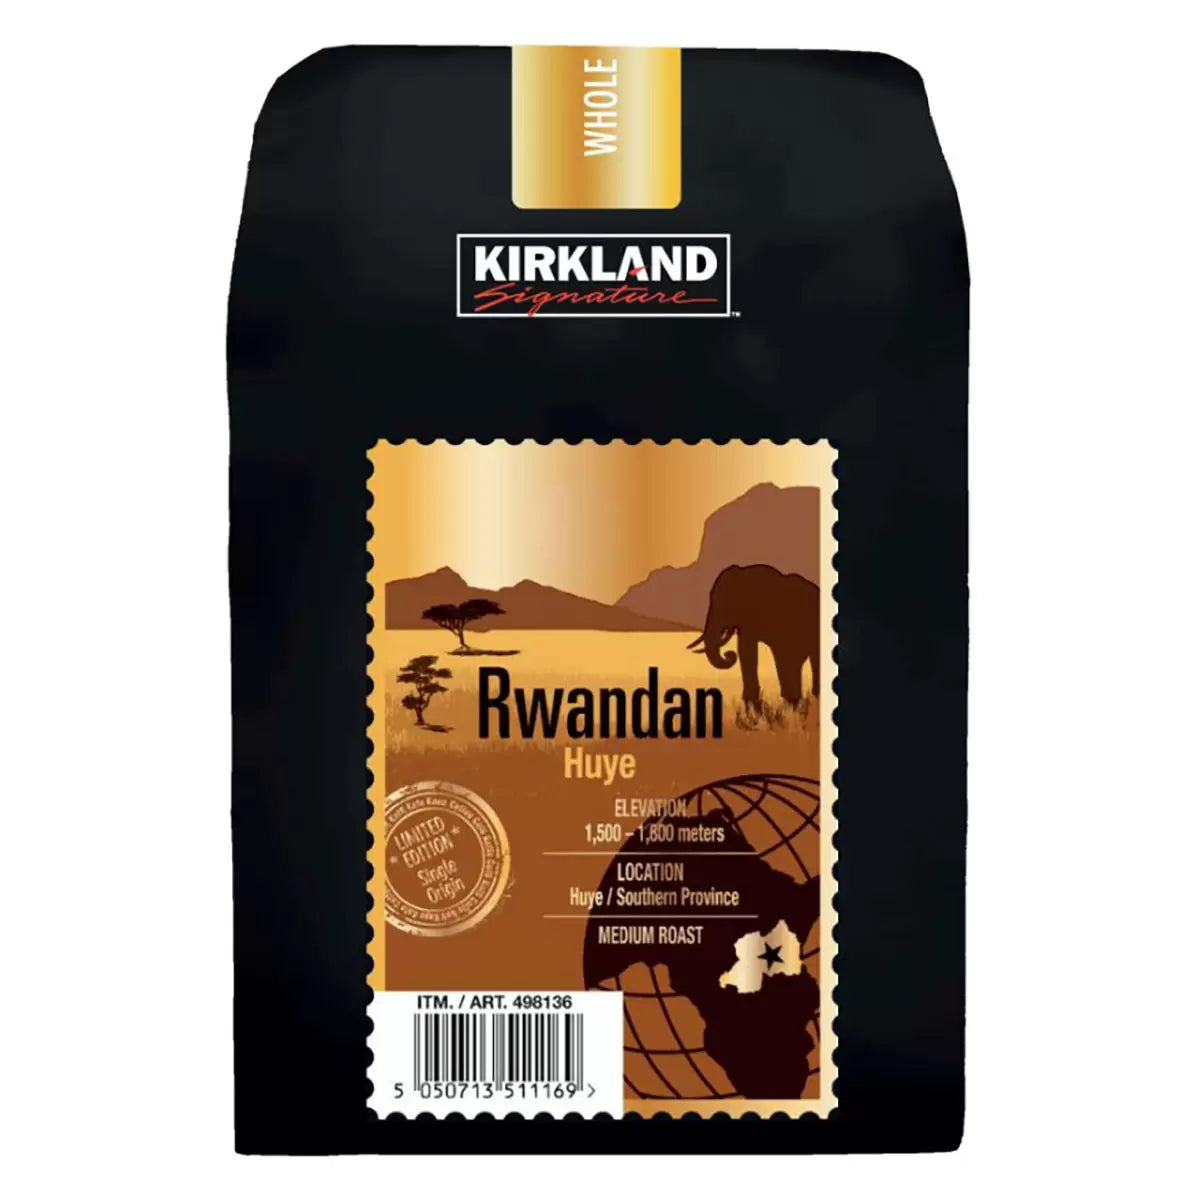 Kirkland Signature Rwandan Medium Roast Whole Coffee Beans - 907g